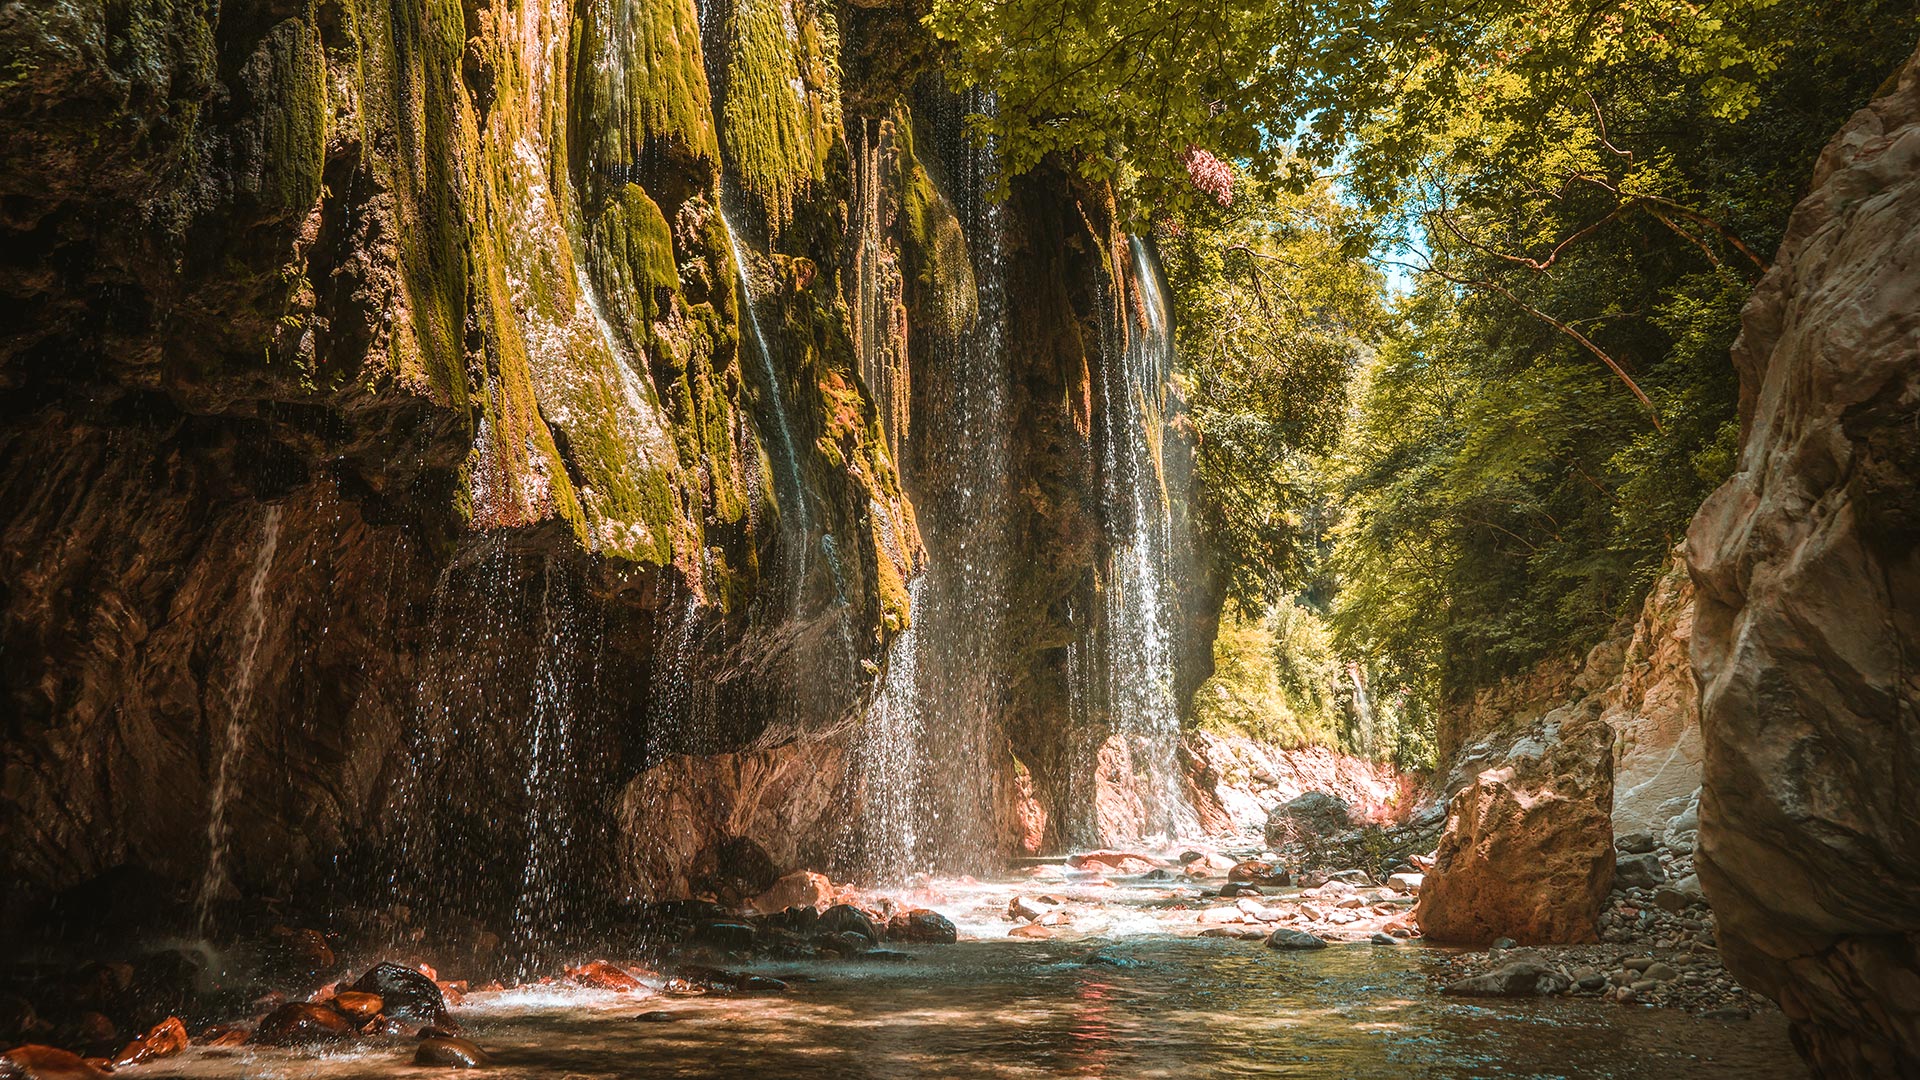 Panta vrechi - "always raining" waterfalls in Central Greece